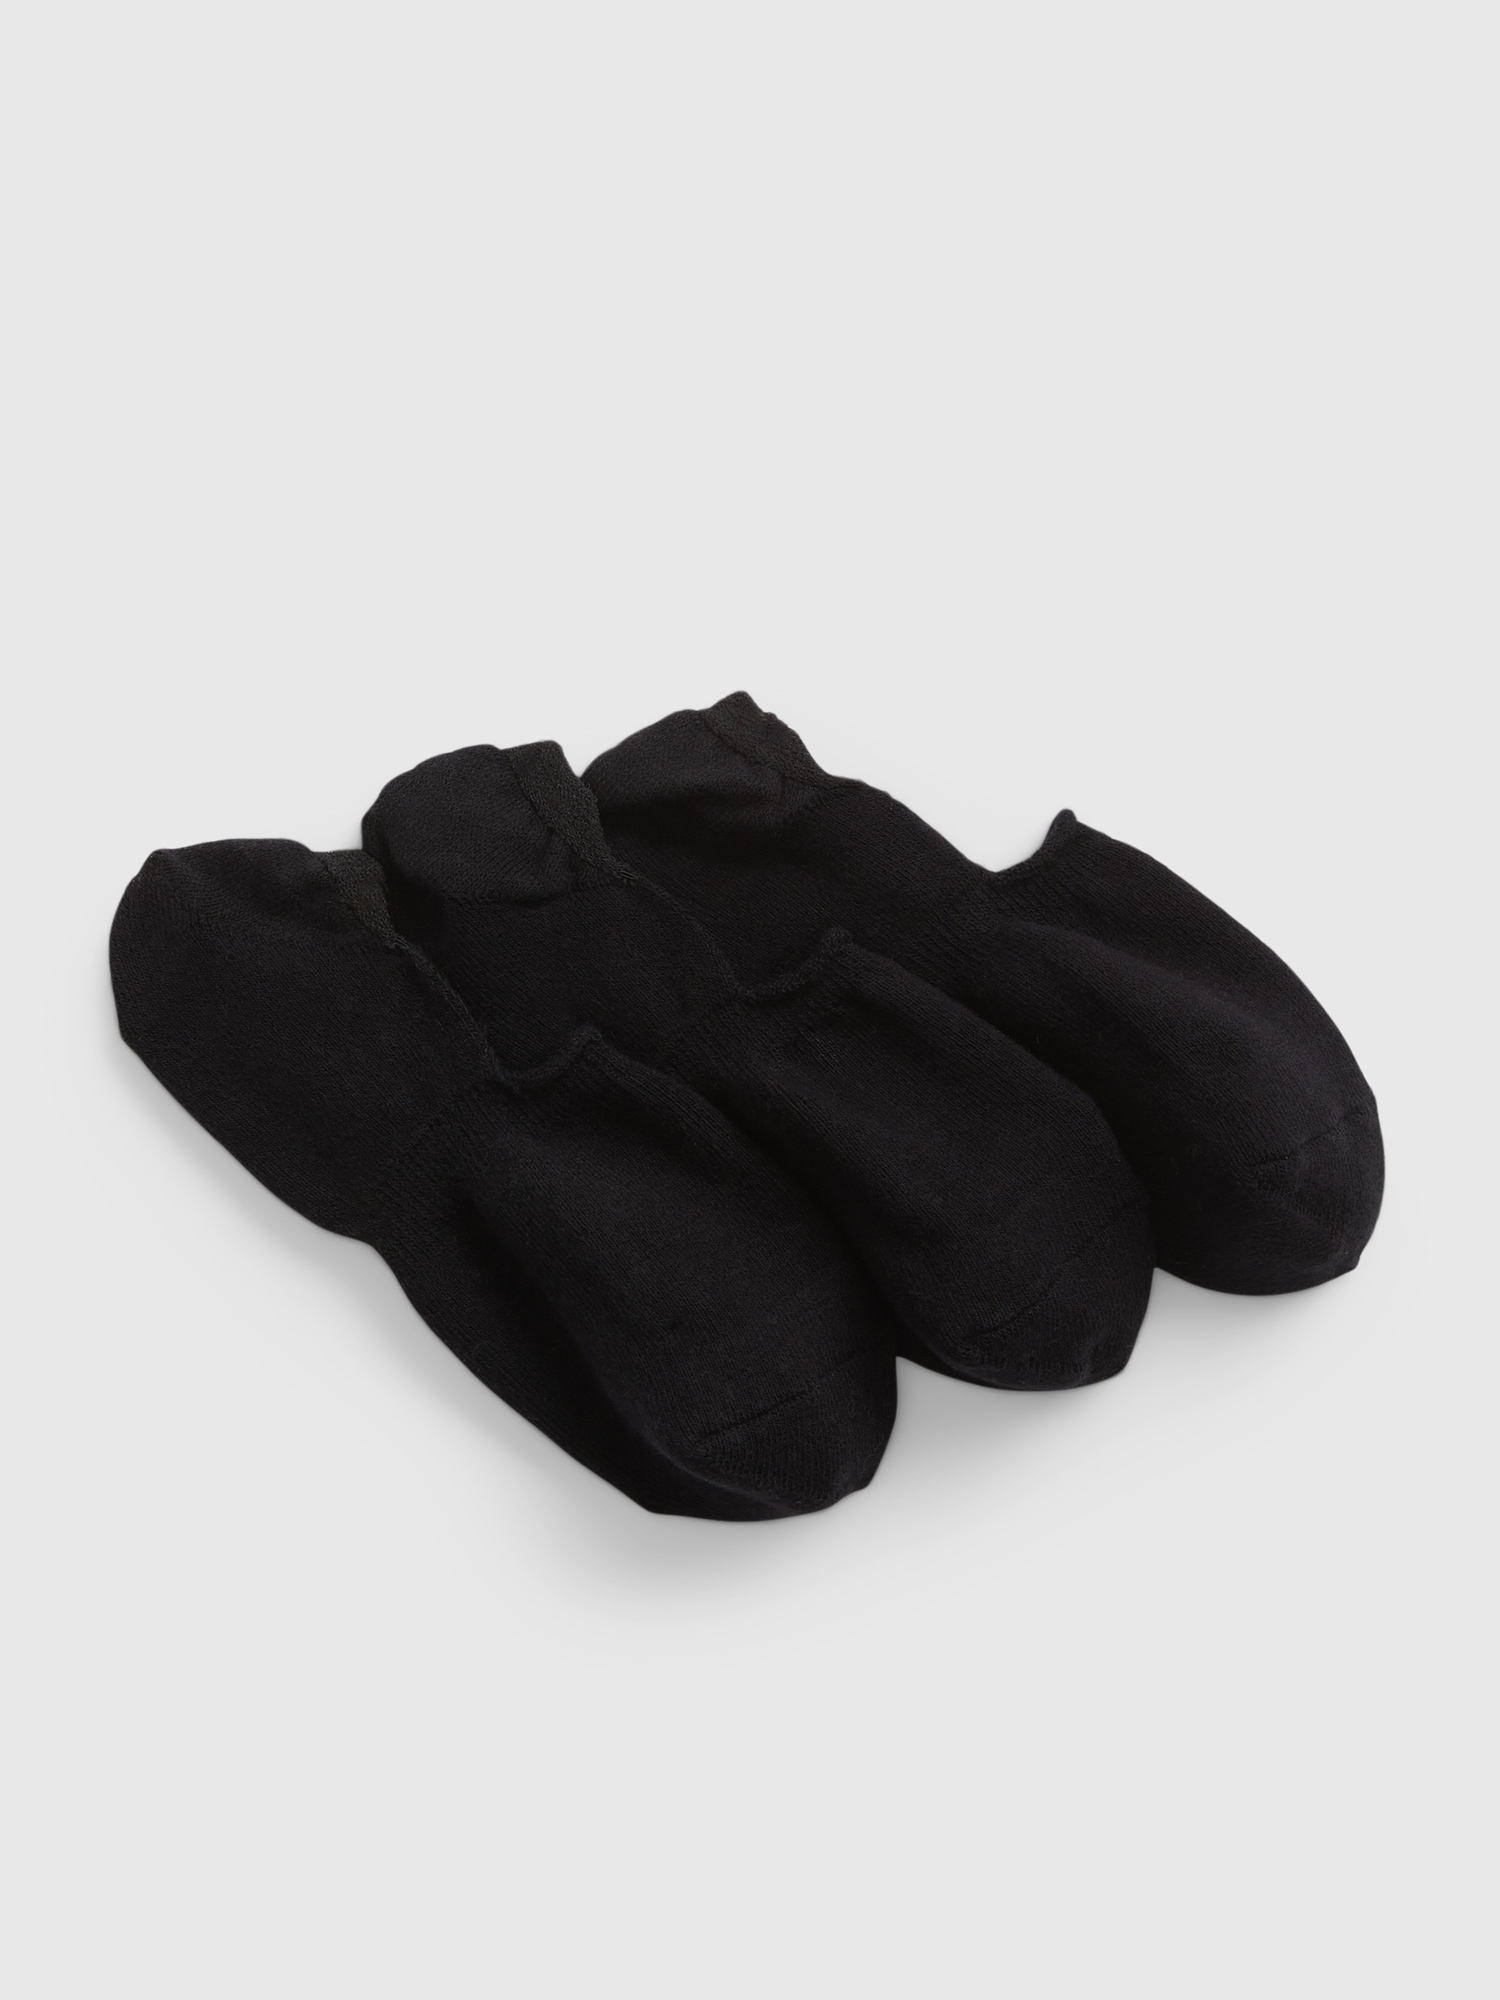 Men's Sneaker 3-Pack Liner Sock - Men's Socks & Liners